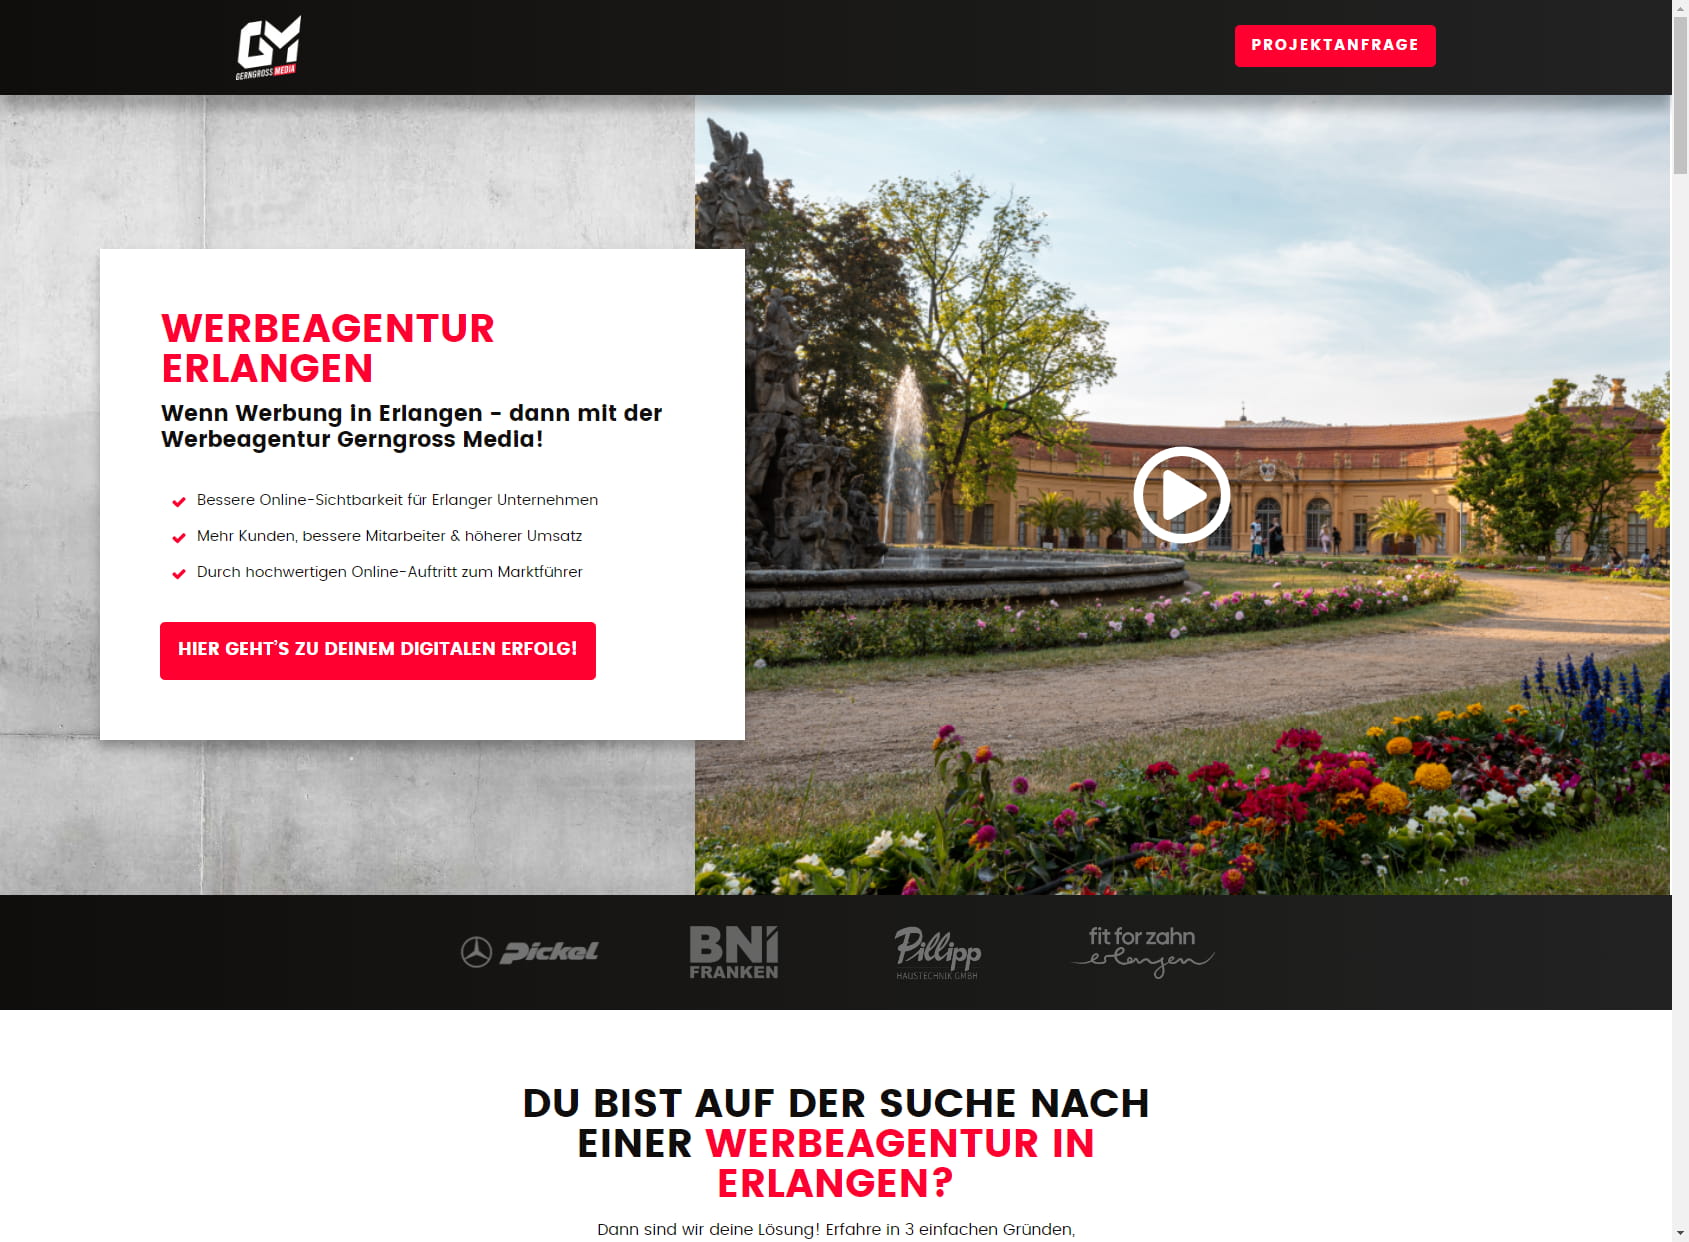 Gerngross Media | Werbeagentur in Erlangen